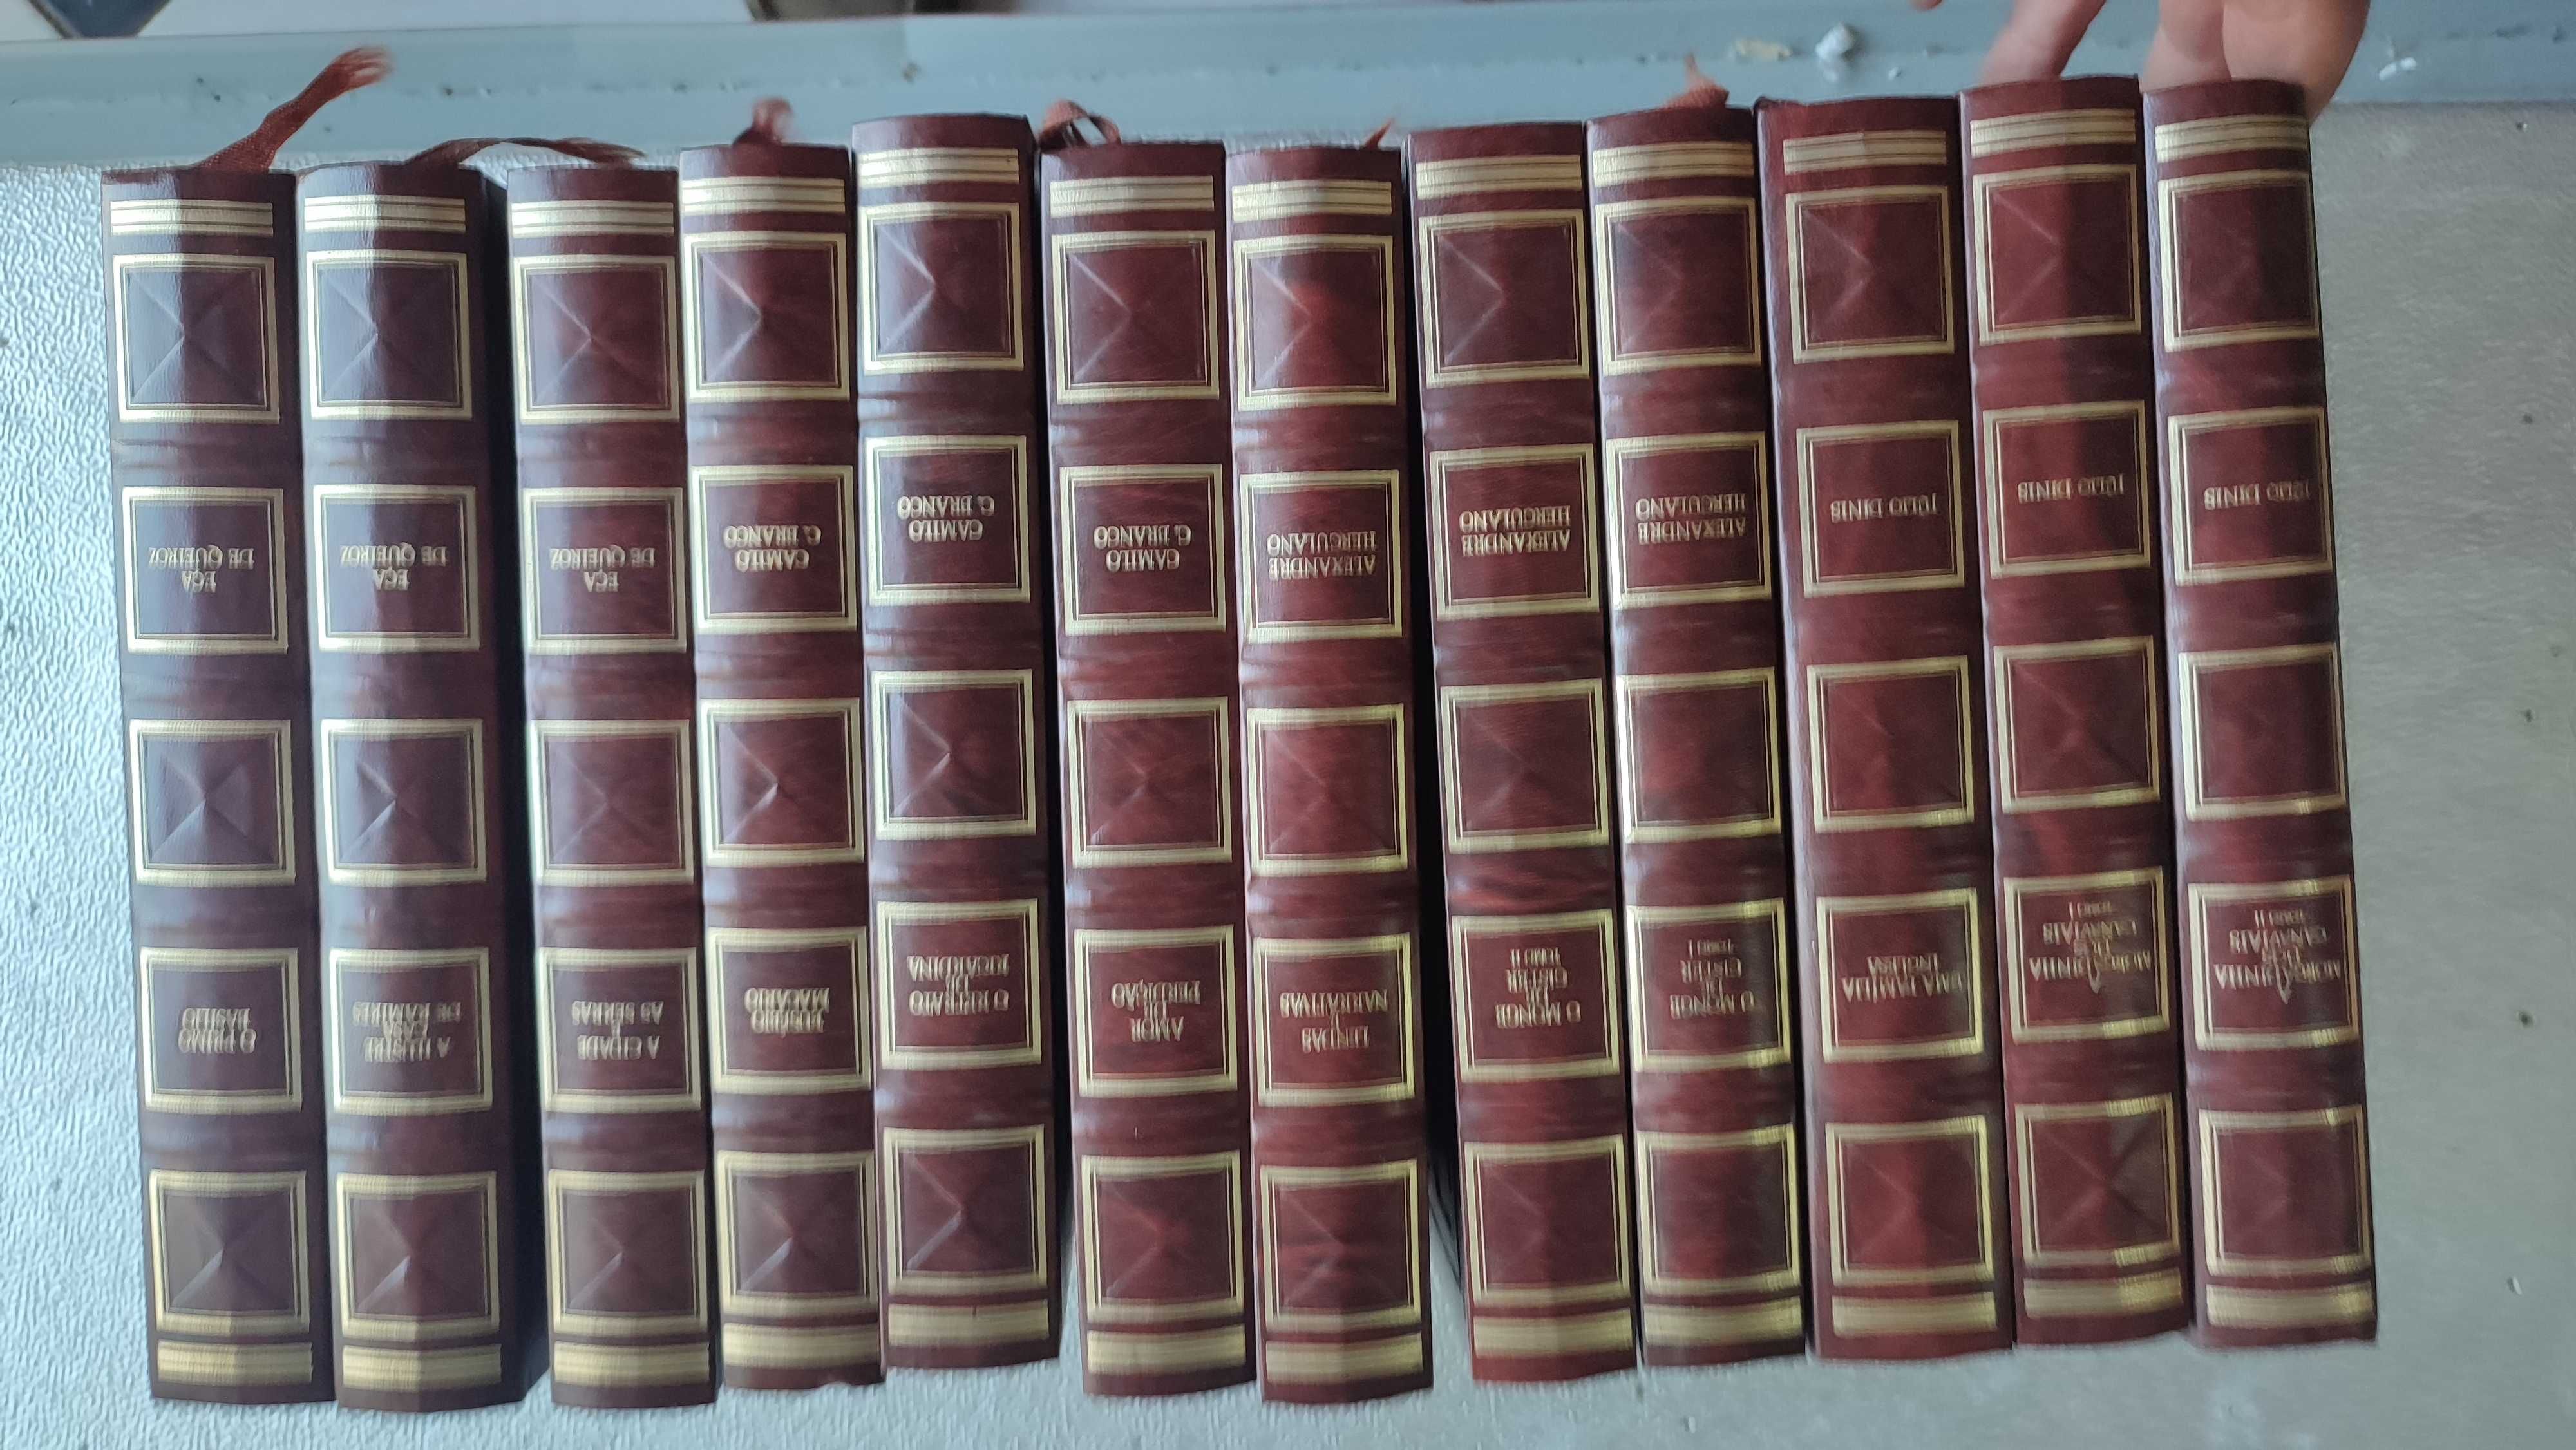 Lote 12 volumes Clássicos Portugueses - Edição em capa dura